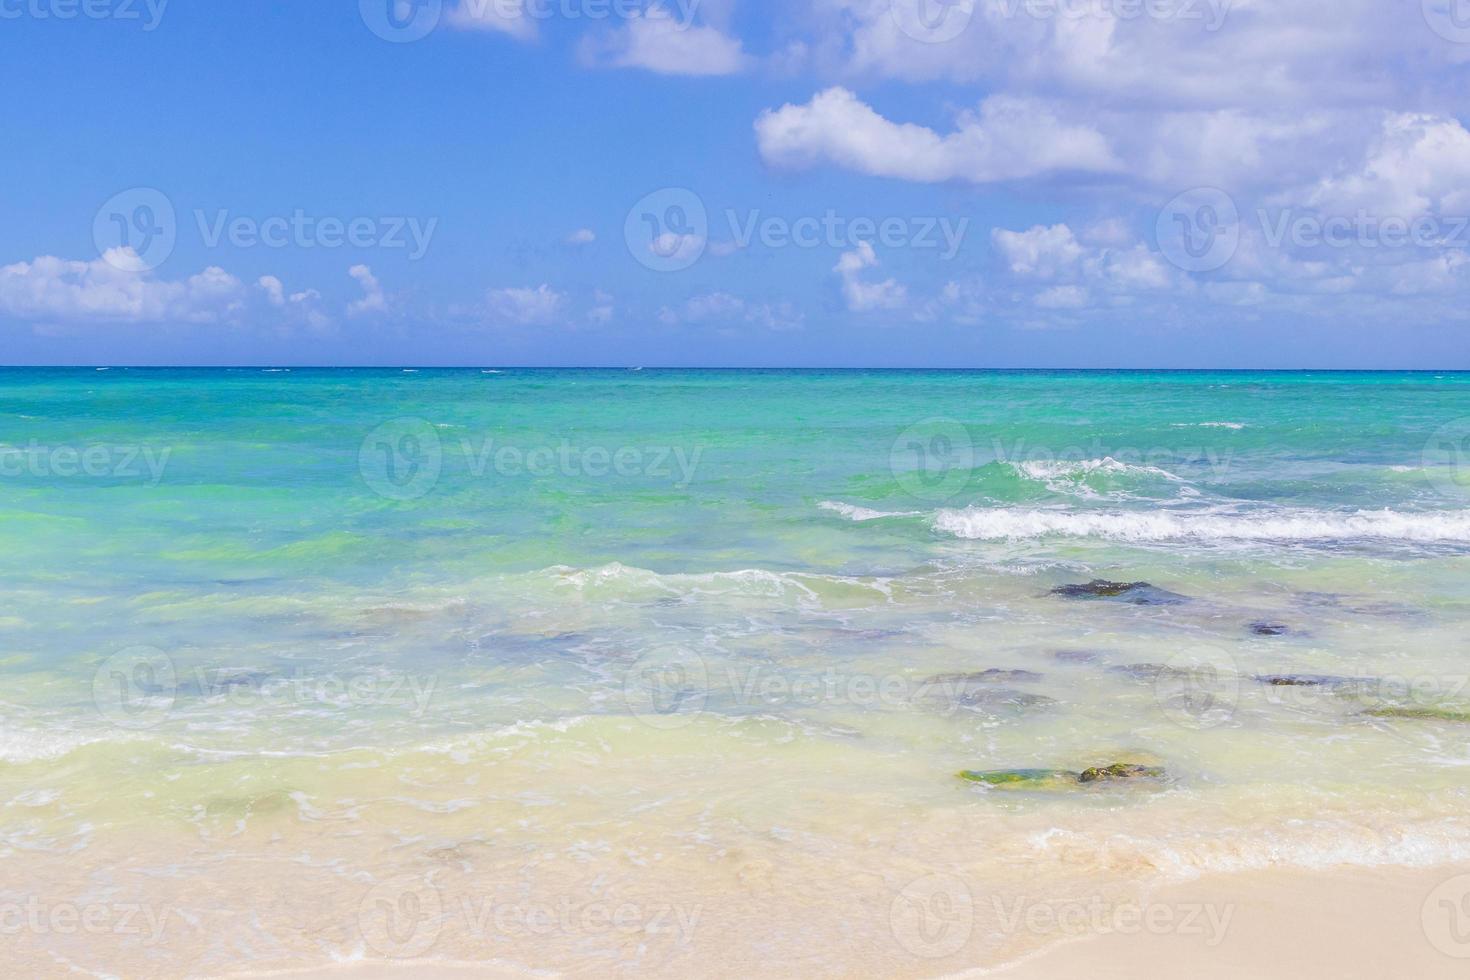 tropischer mexikanischer strand 88 punta esmeralda playa del carmen mexiko. foto